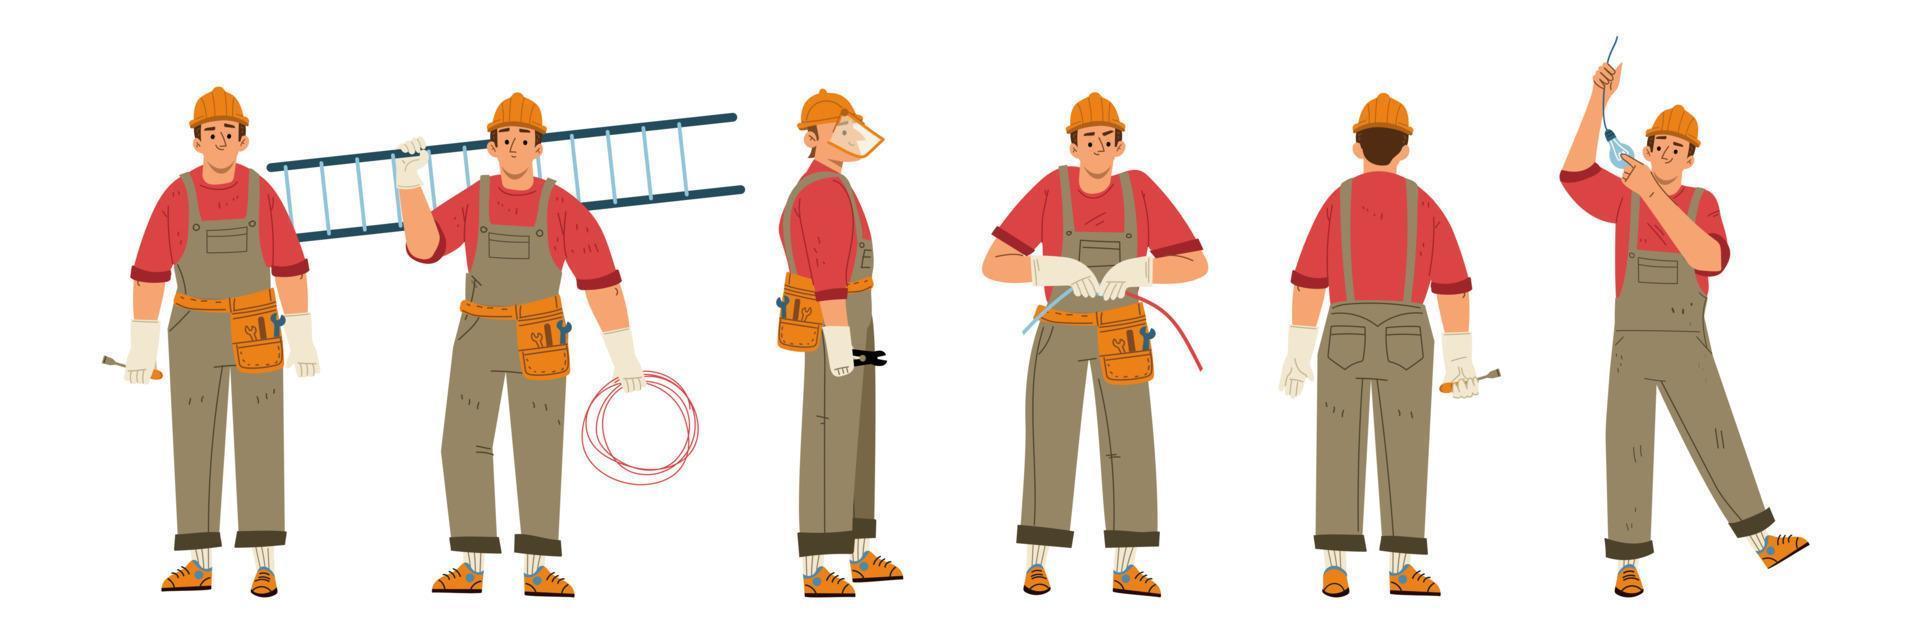 Electrician worker, repair technician, engineer vector